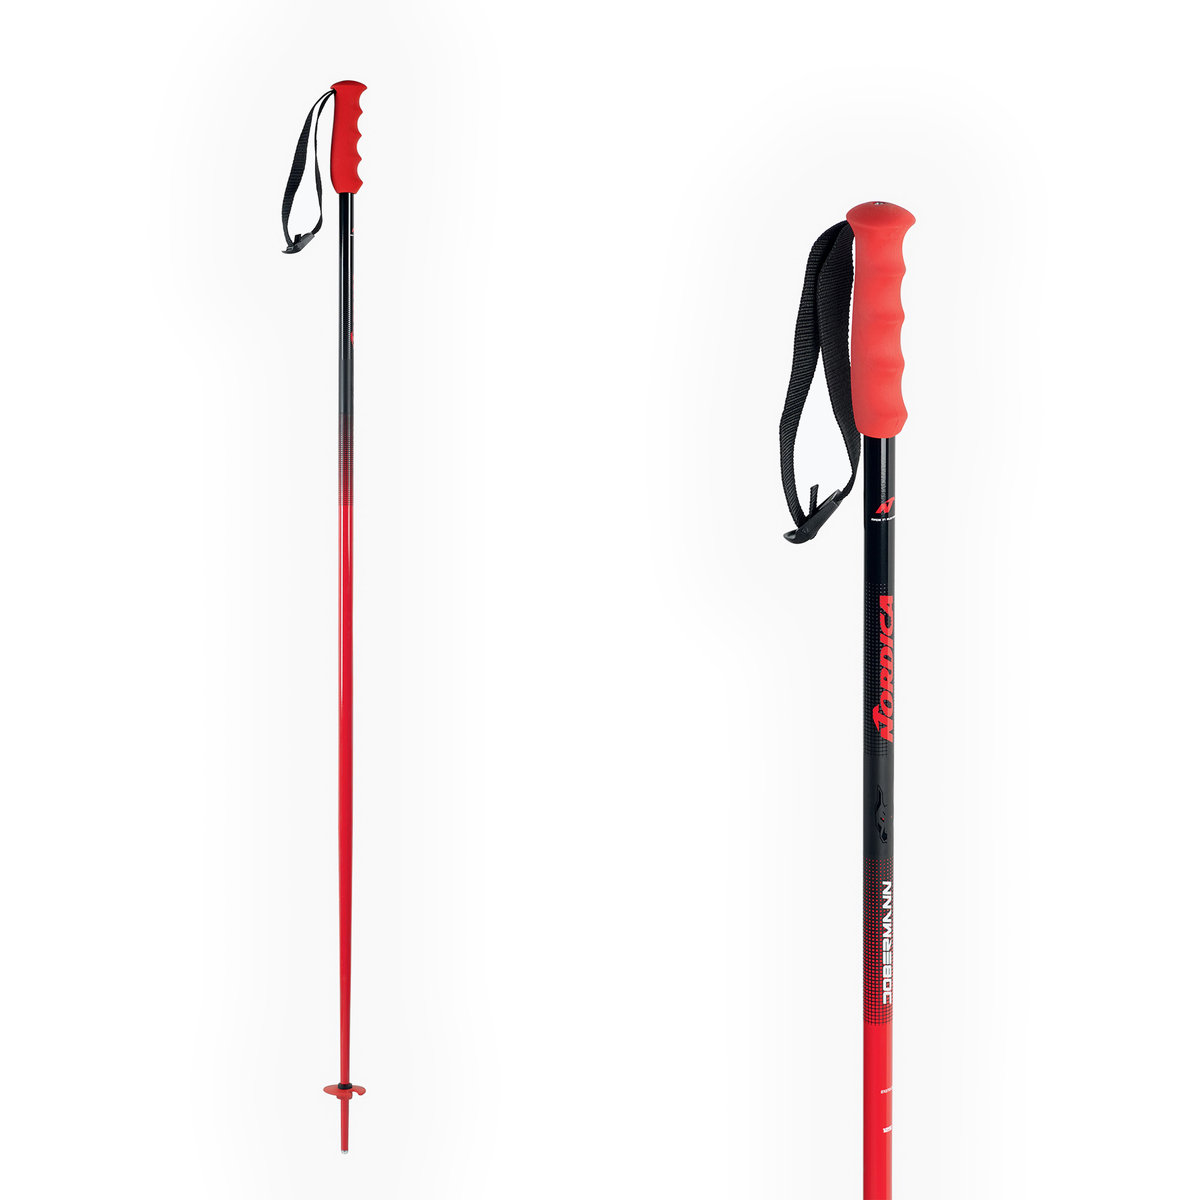 Kije narciarskie Nordica Dobermann ALU 18 MM STANDARD czerwone 0B082800 001 125 cm